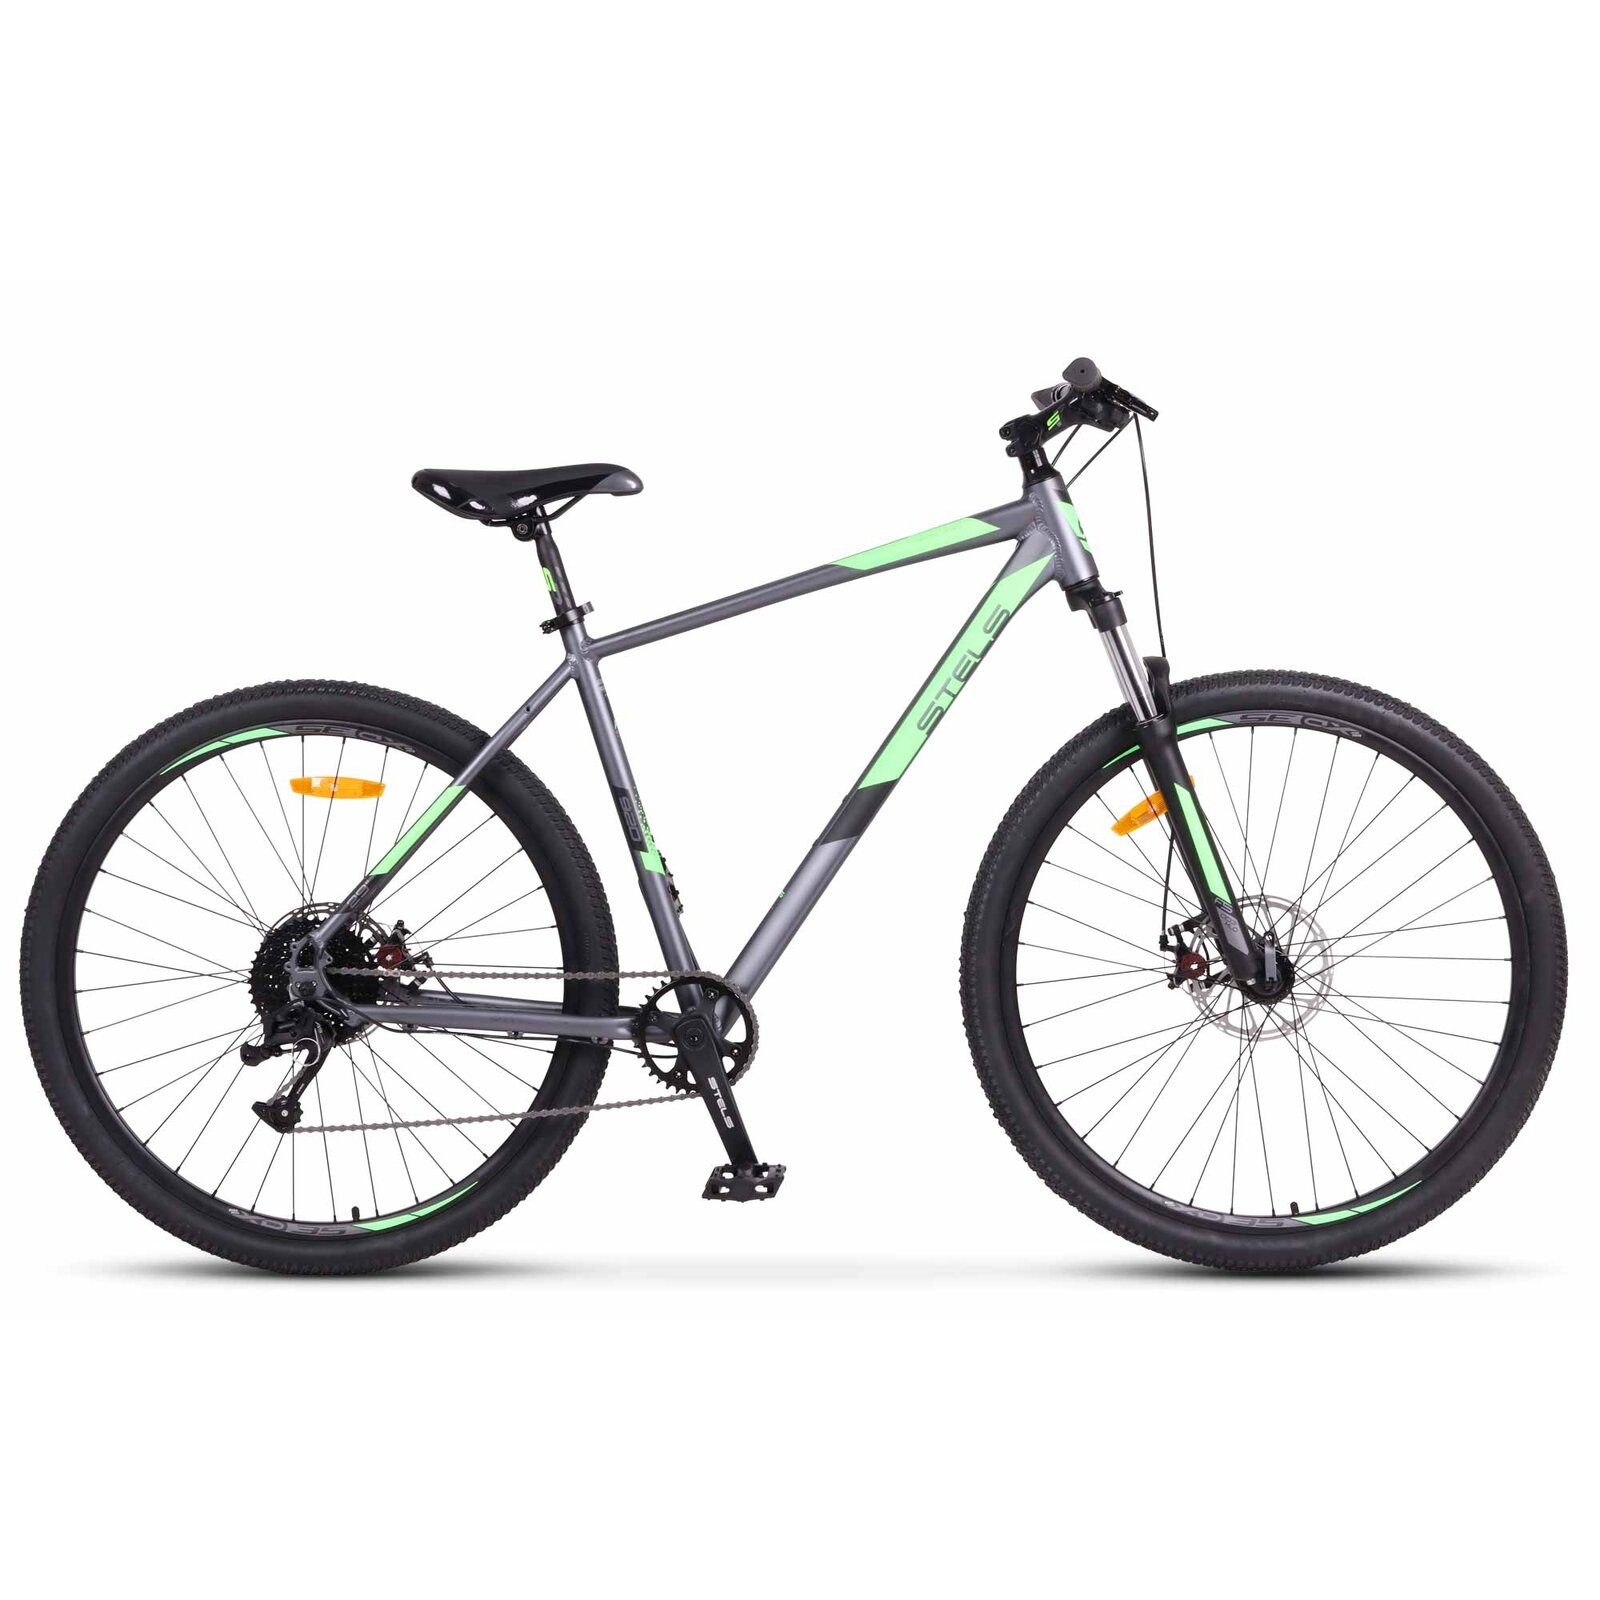 Горный (MTB) велосипед Stels Navigator 920 MD 29 V020 (2022) 20,5 антрацит/зеленый (требует финальной сборки)